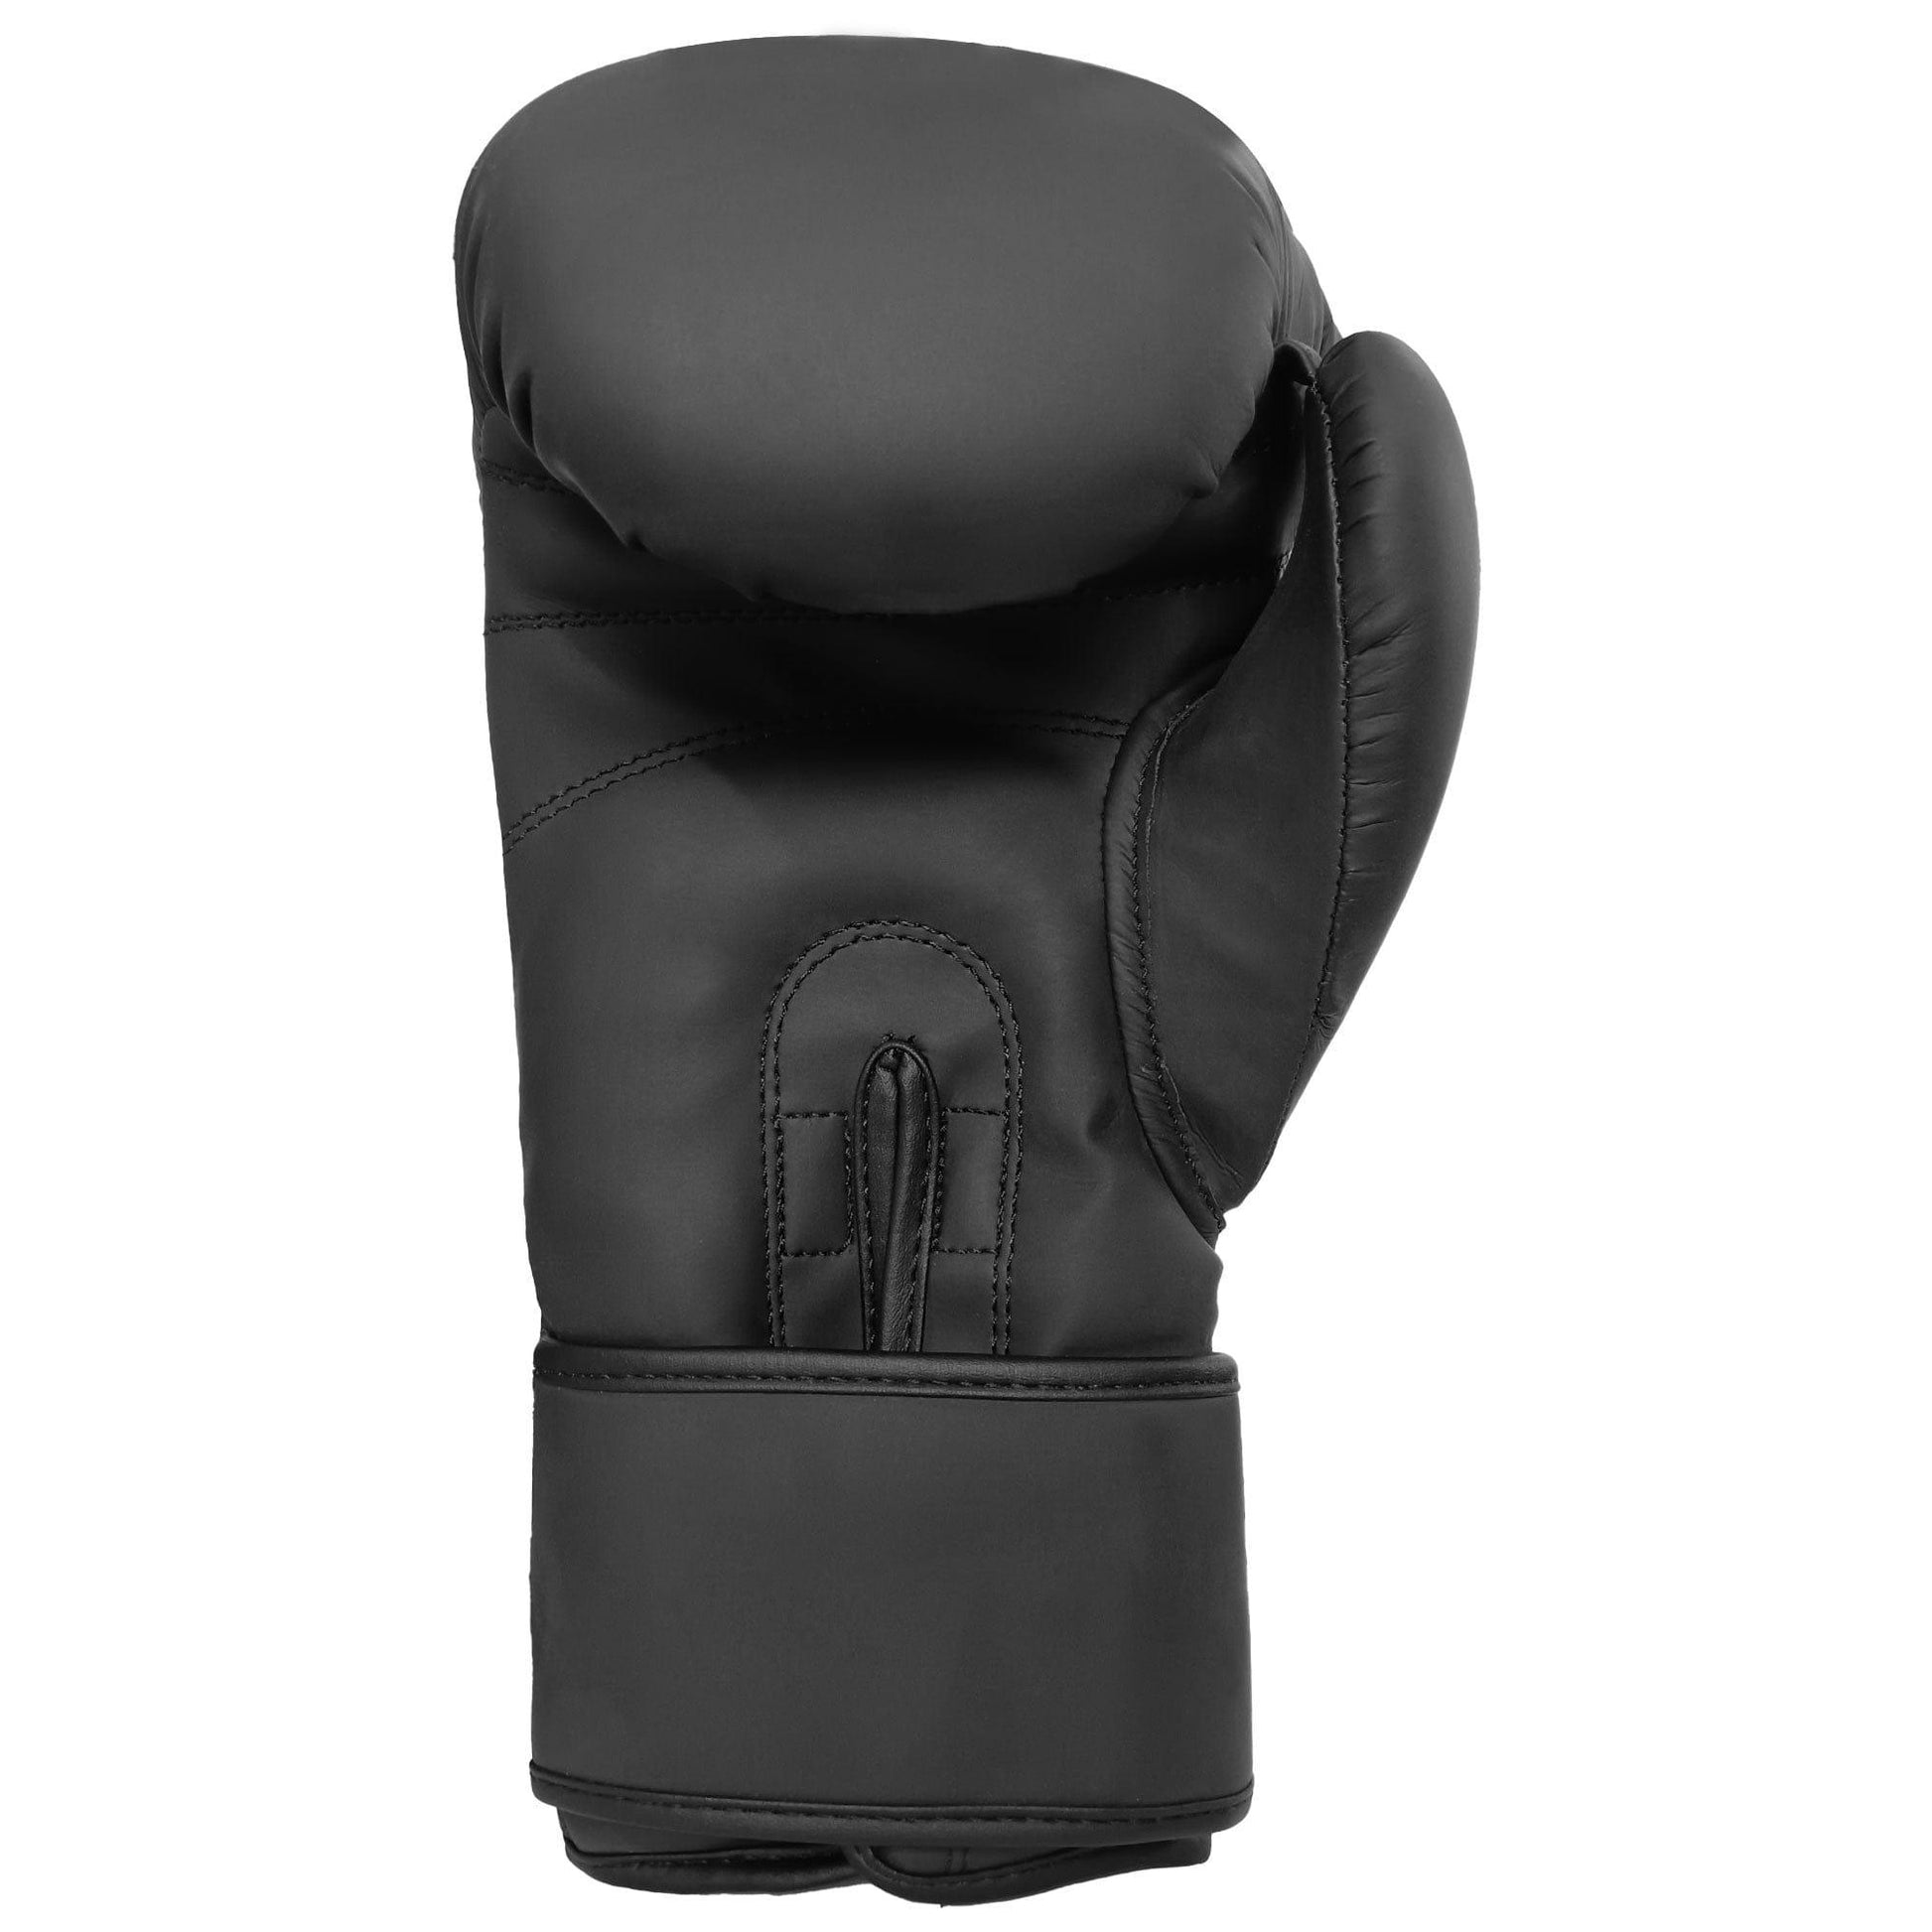 Boxing gloves Matt Black for Adults & Kids 04-16 OZ Vaster Moto